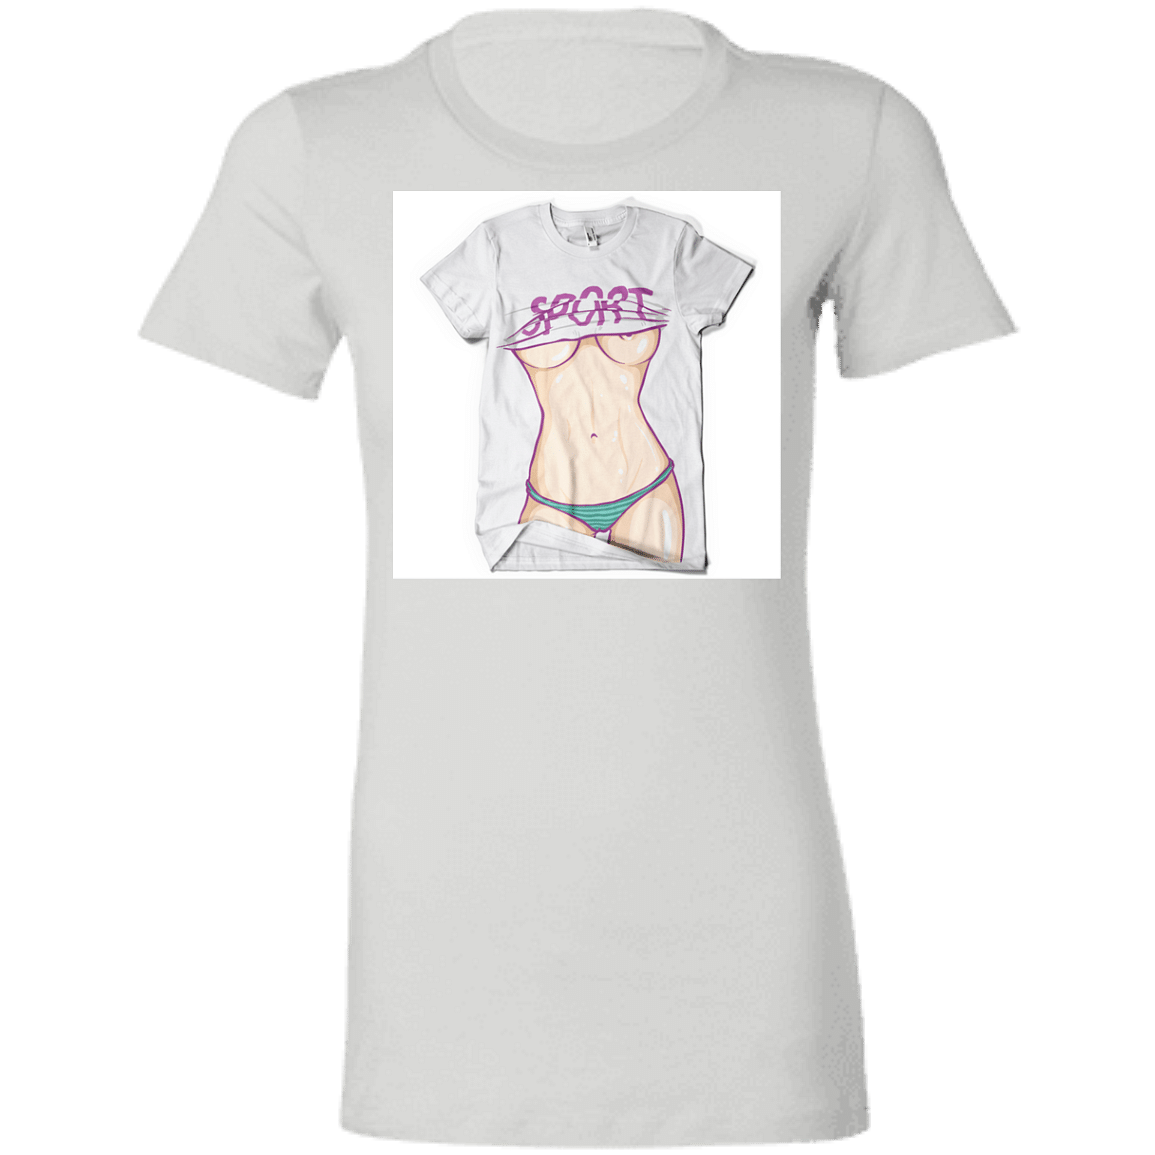 6004 Ladies' Favorite T-Shirt